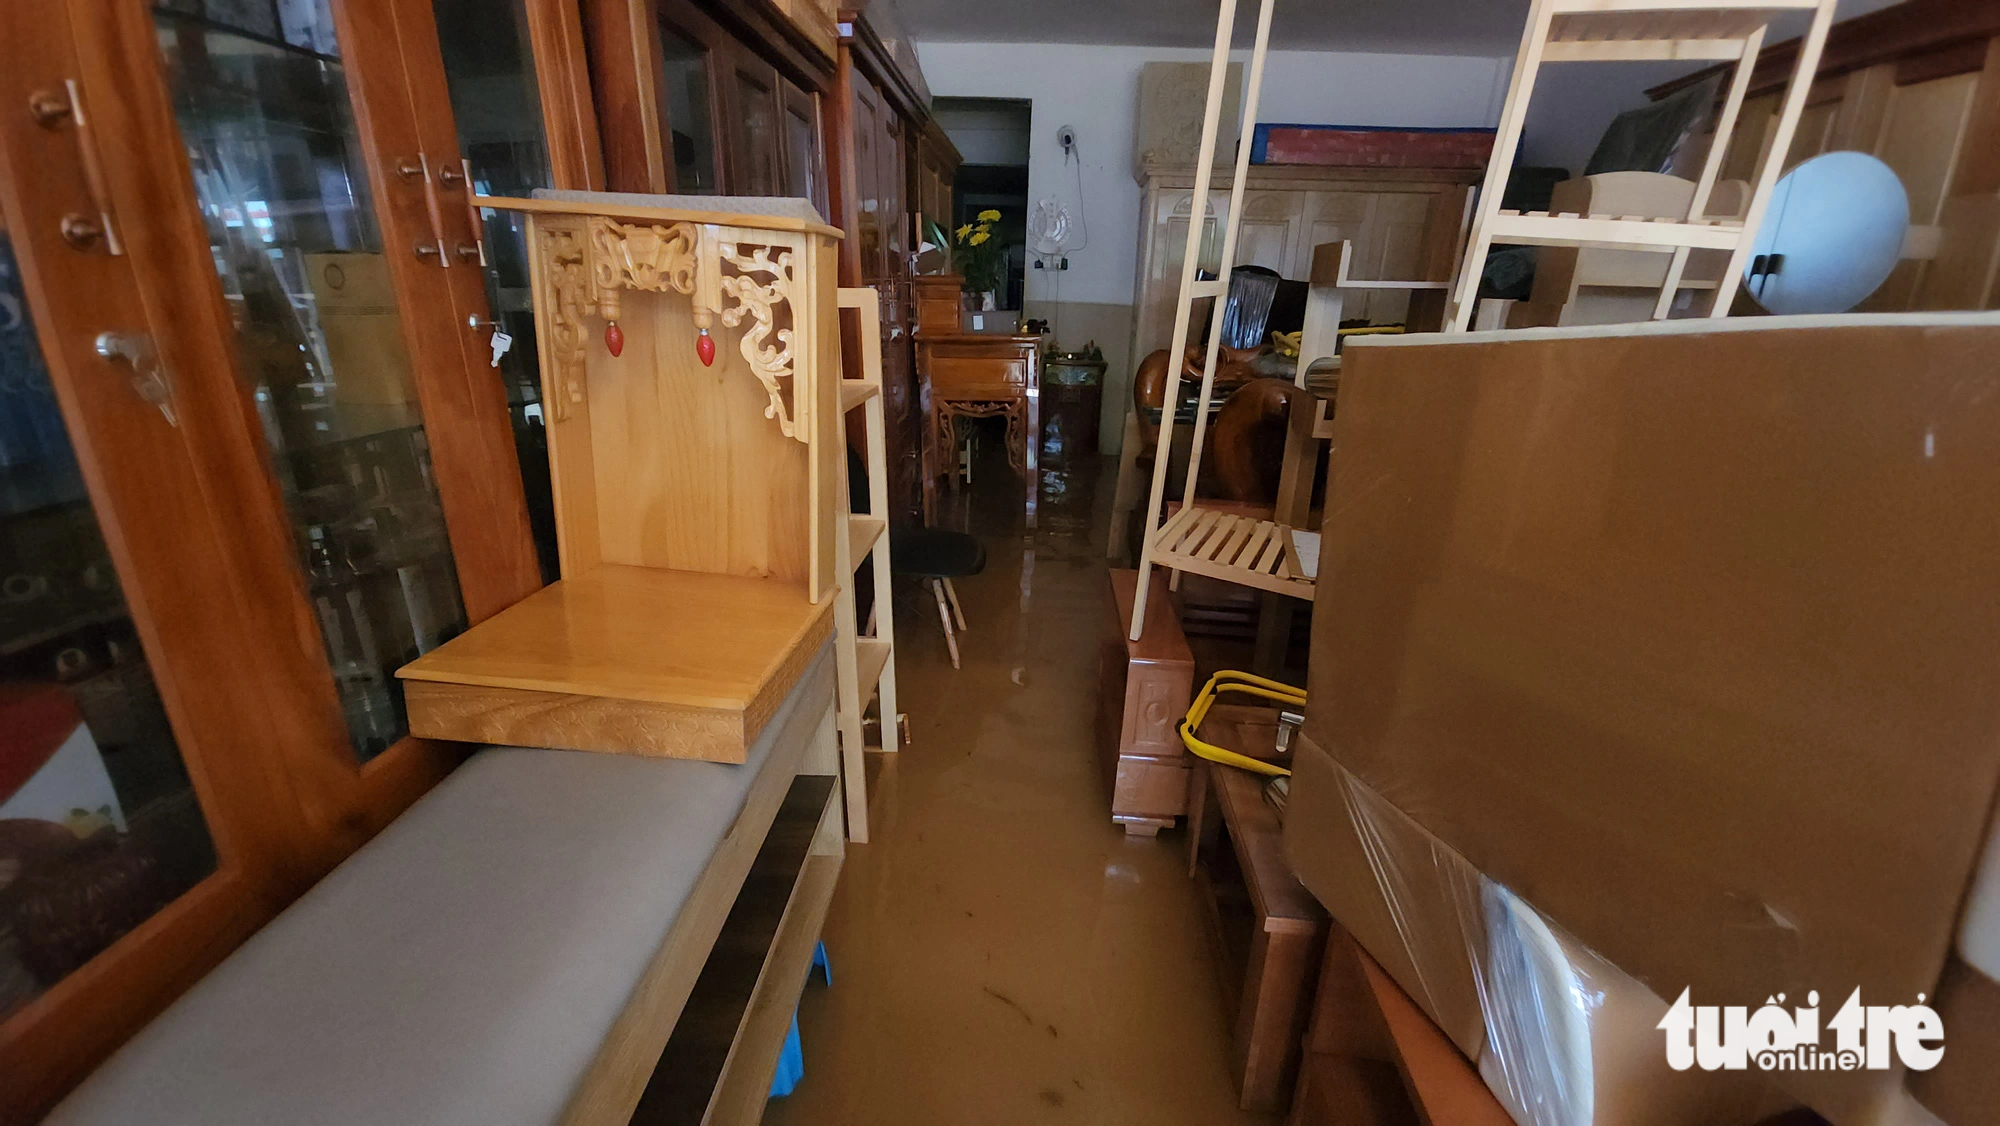 The rain takes a toll on a furniture store. Photo: M.V. / Tuoi Tre